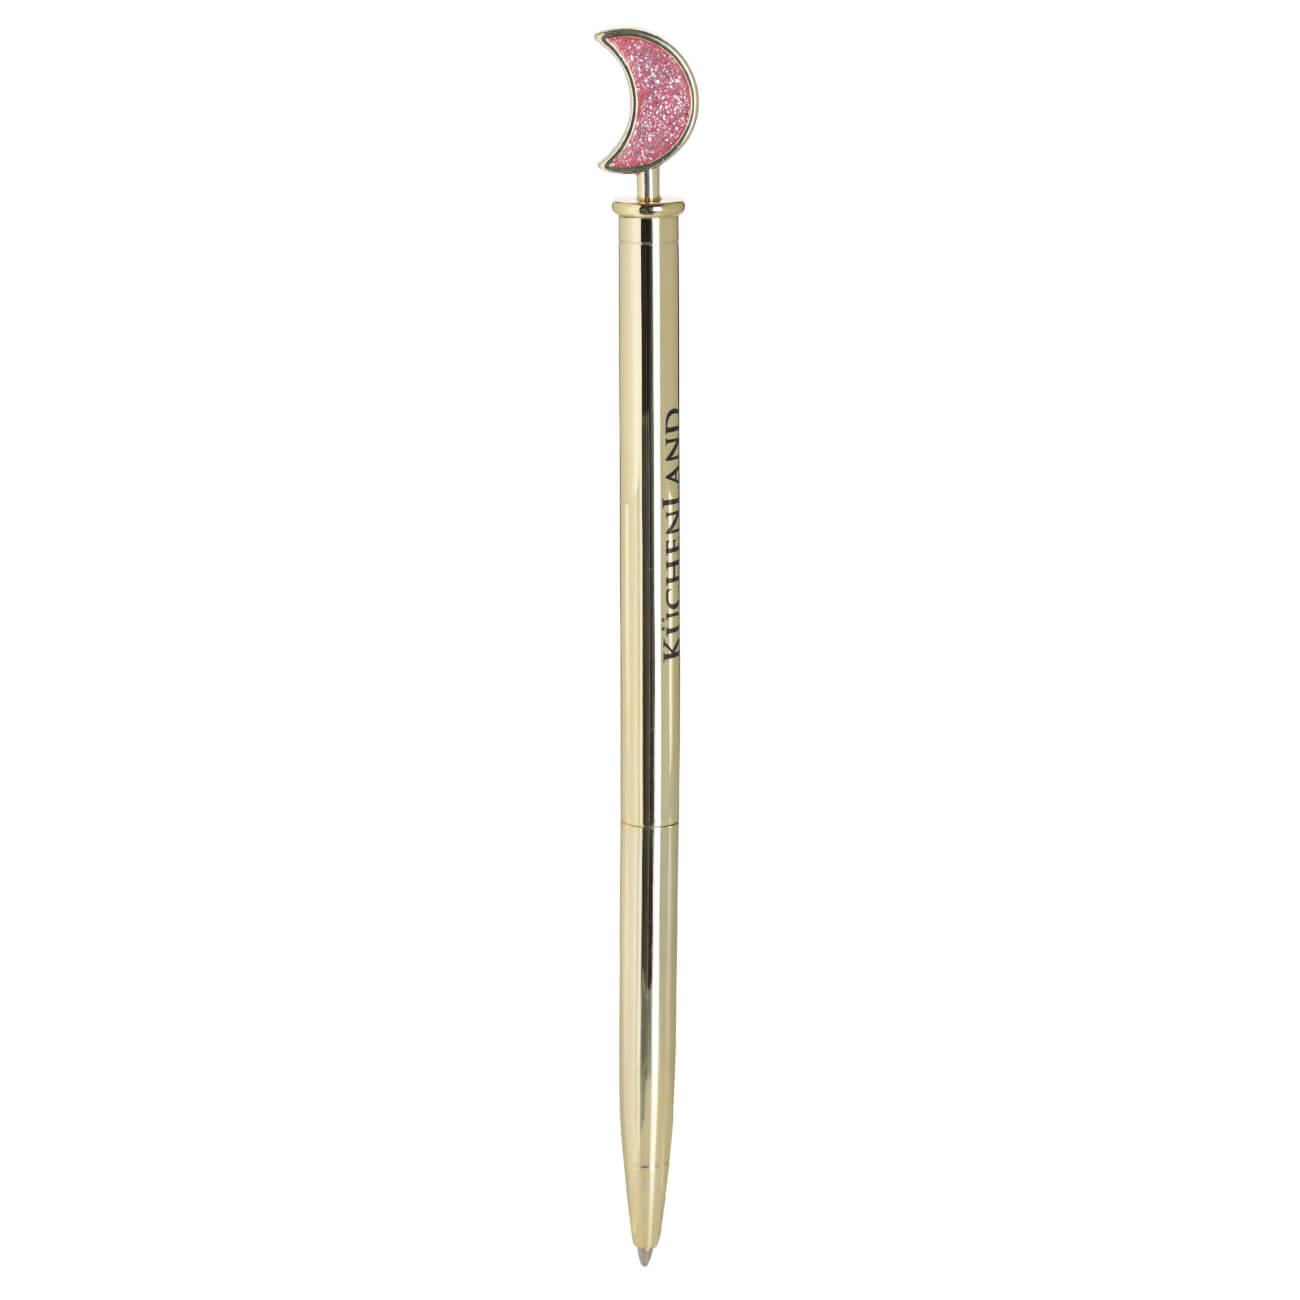 Ручка шариковая, 15 см, с фигуркой, металл, золотистая, Луна, Draw figure ручка подарочная шариковая автоматическая